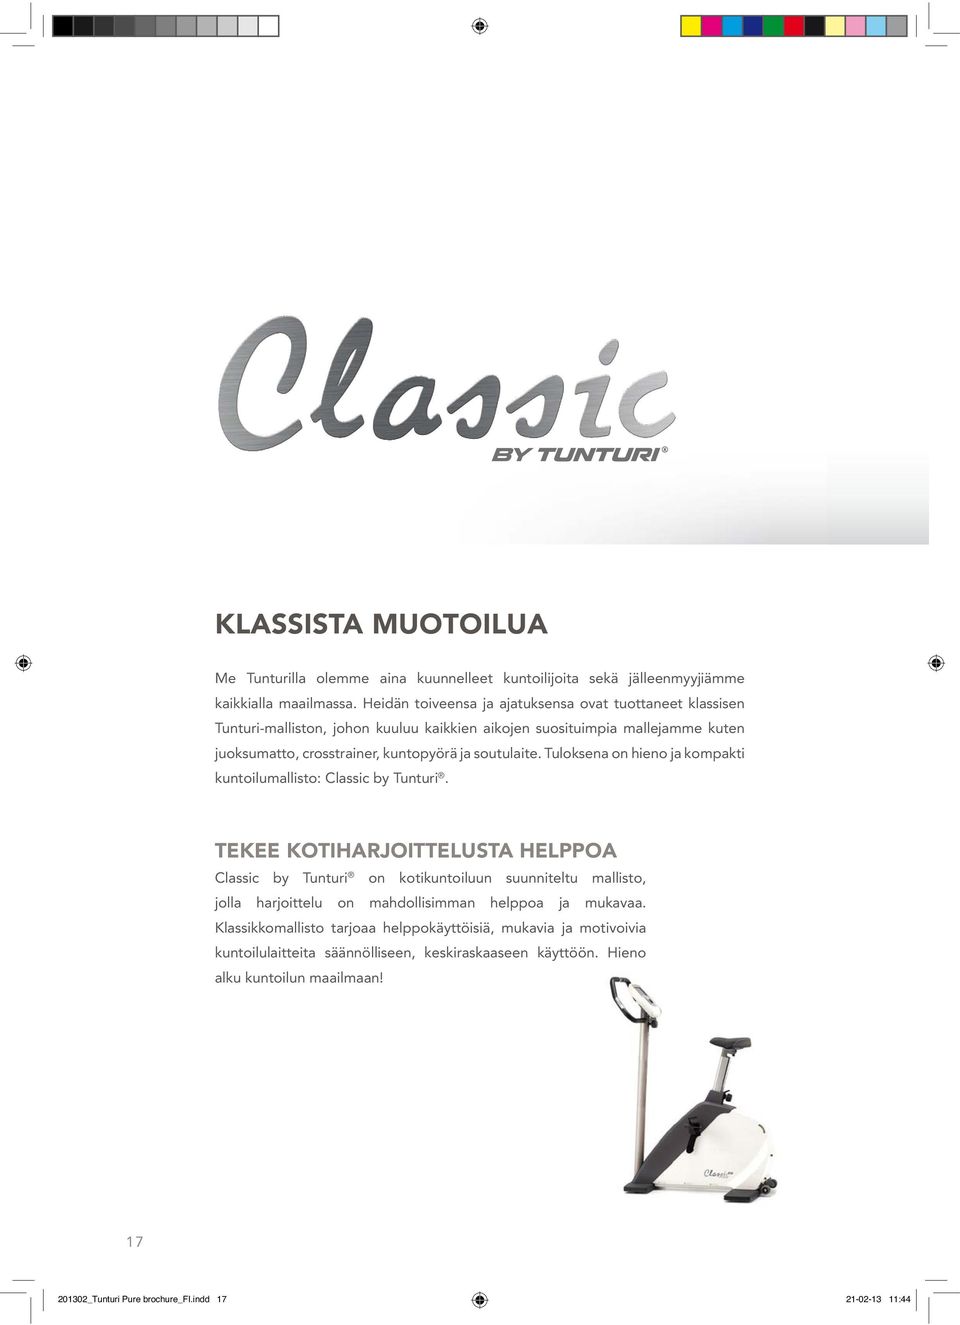 soutulaite. Tuloksena on hieno ja kompakti kuntoilumallisto: Classic by Tunturi.